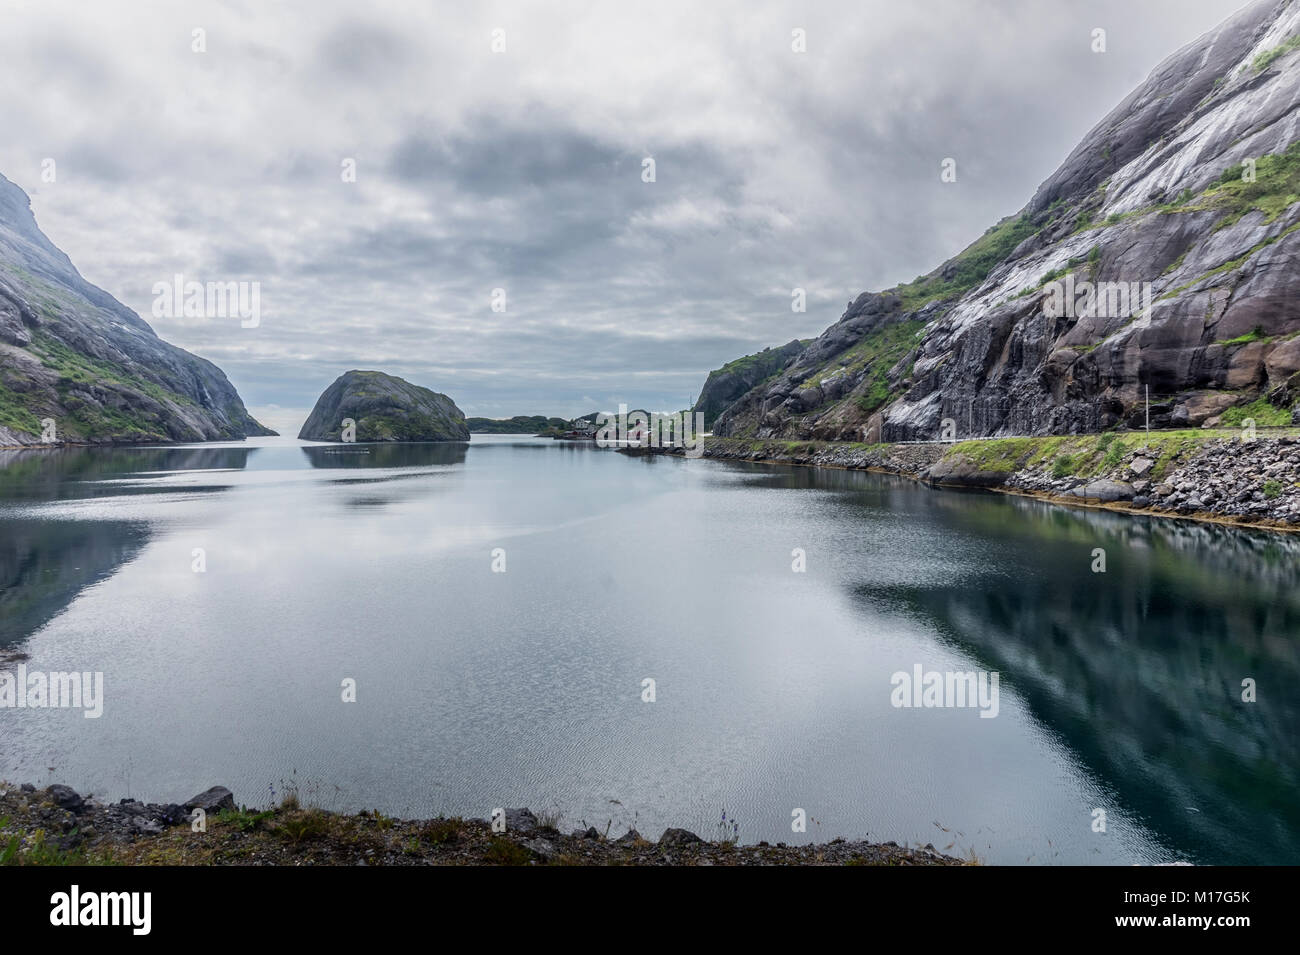 Sponde rocciose riflessa nell'acqua, Lofoten, Norvegia Foto Stock